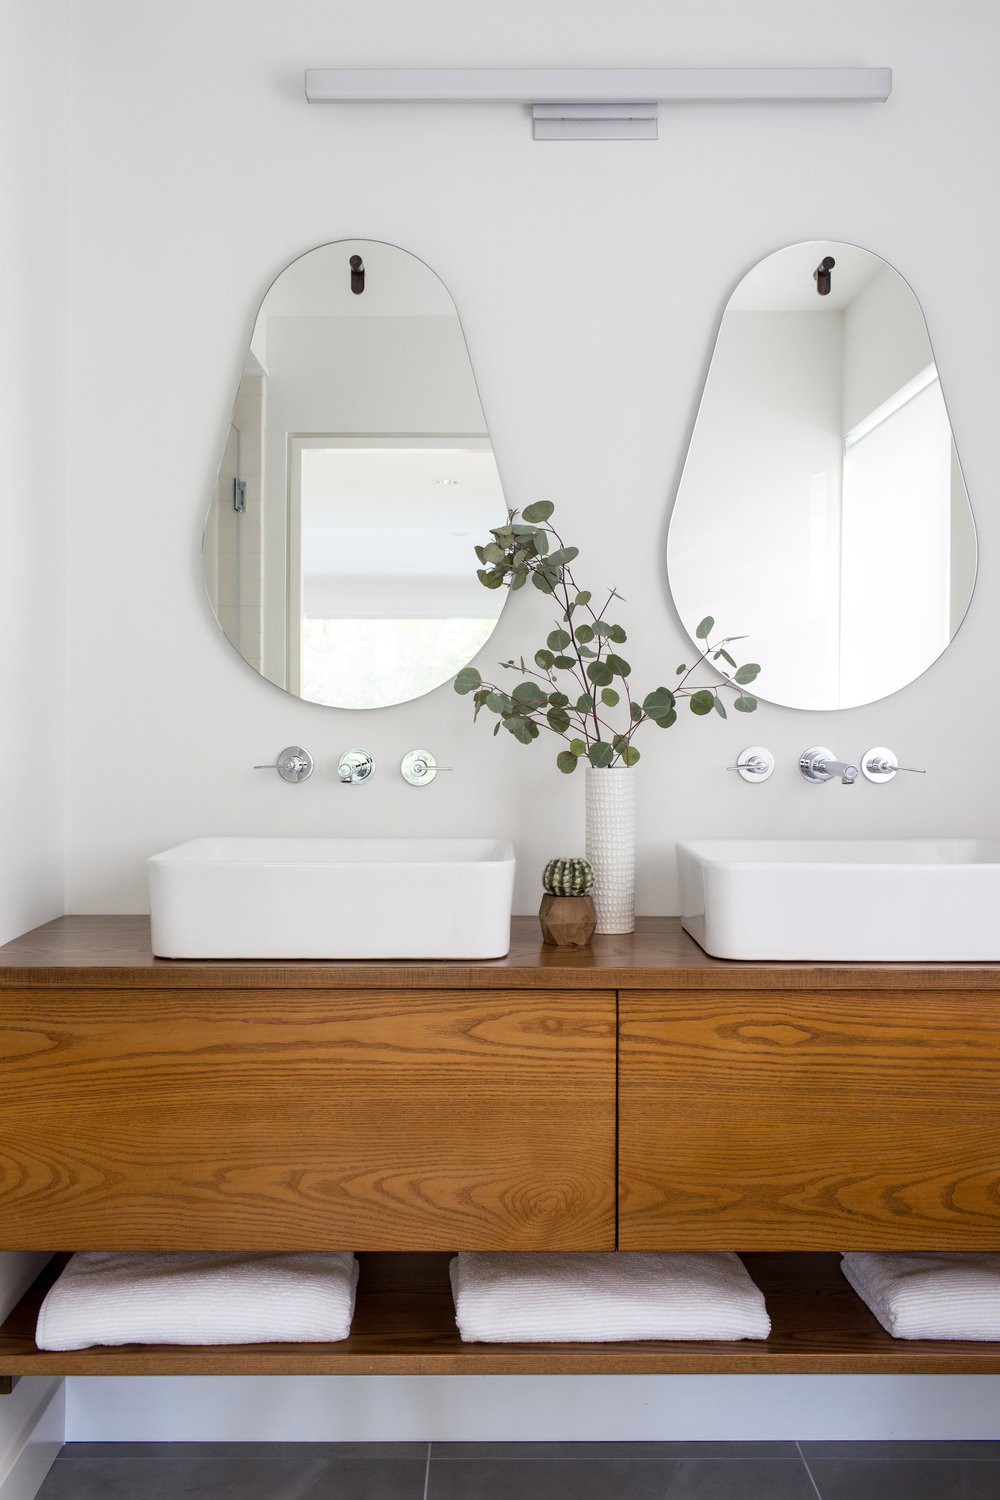 Hình ảnh phòng tắm thanh lịch với bộ đôi bồn rửa bằng sứ màu trắng, hai gương treo phía trên, tủ đựng bằng gỗ